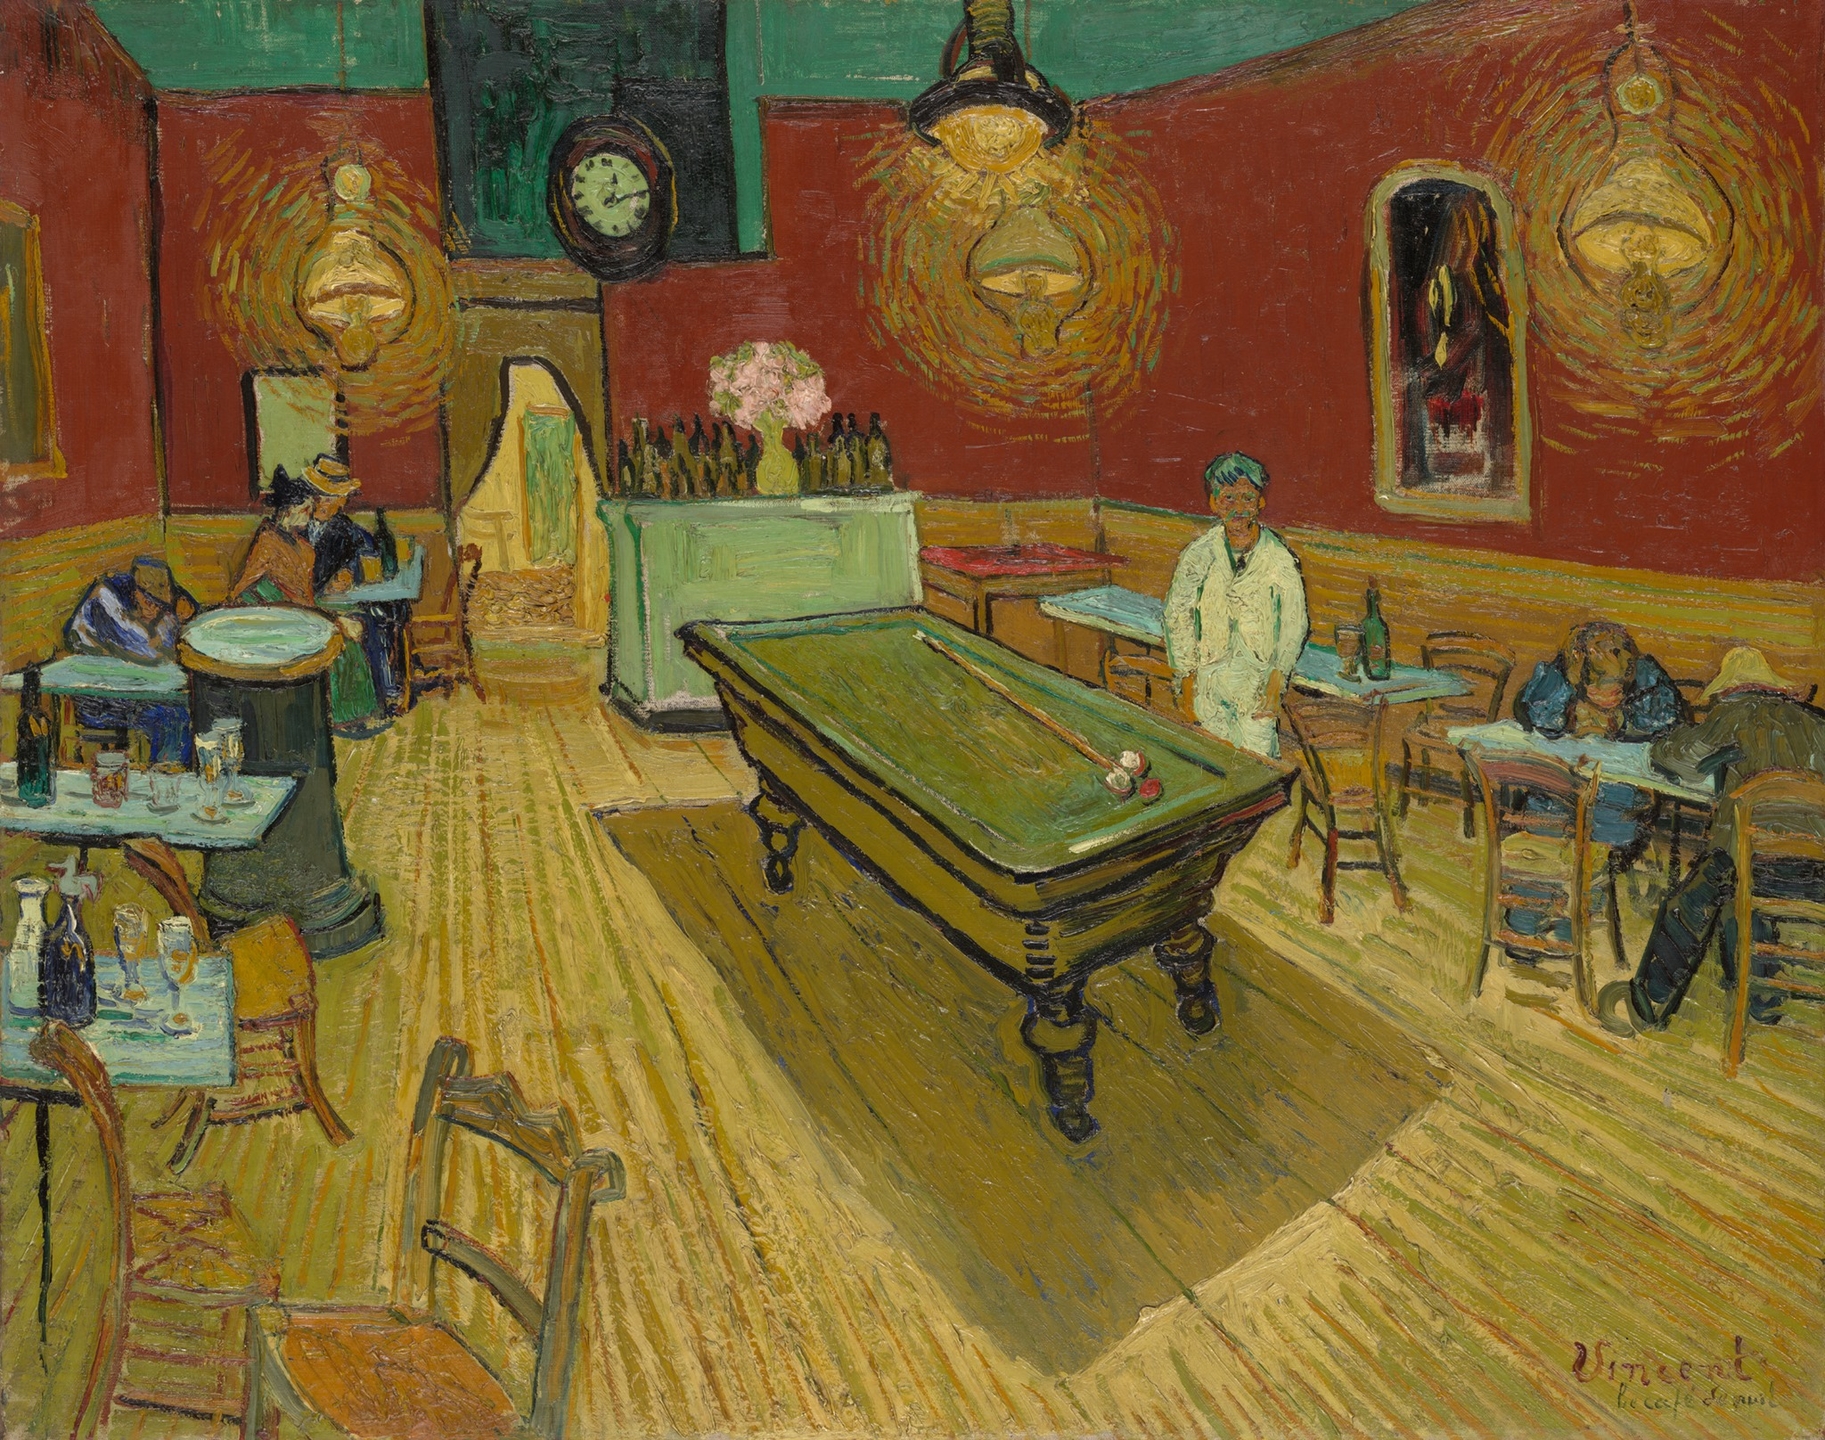 Was Van Gogh a food lover?